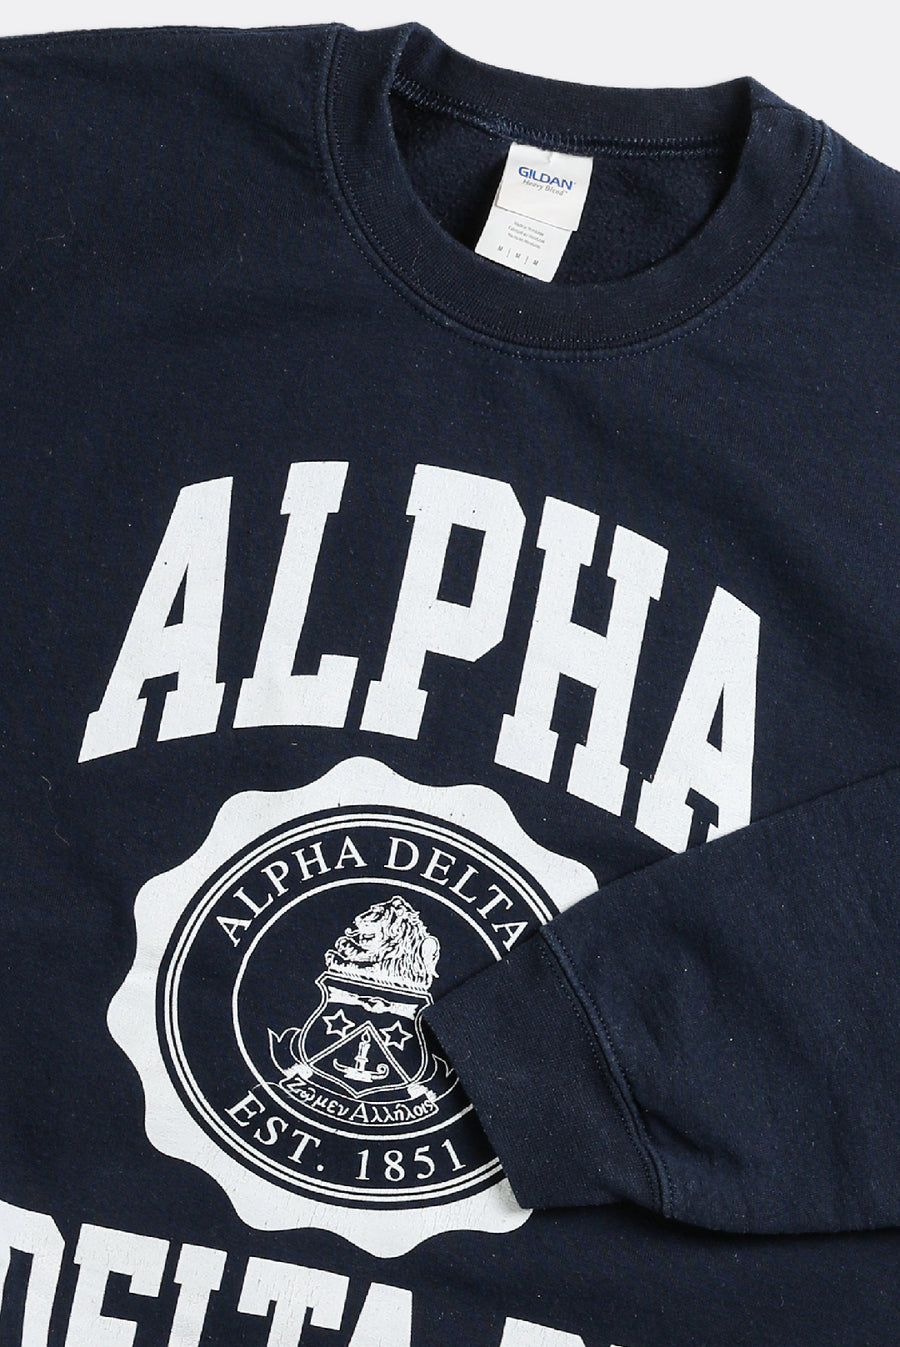 Vintage Alpha Delta Pi Sweatshirt